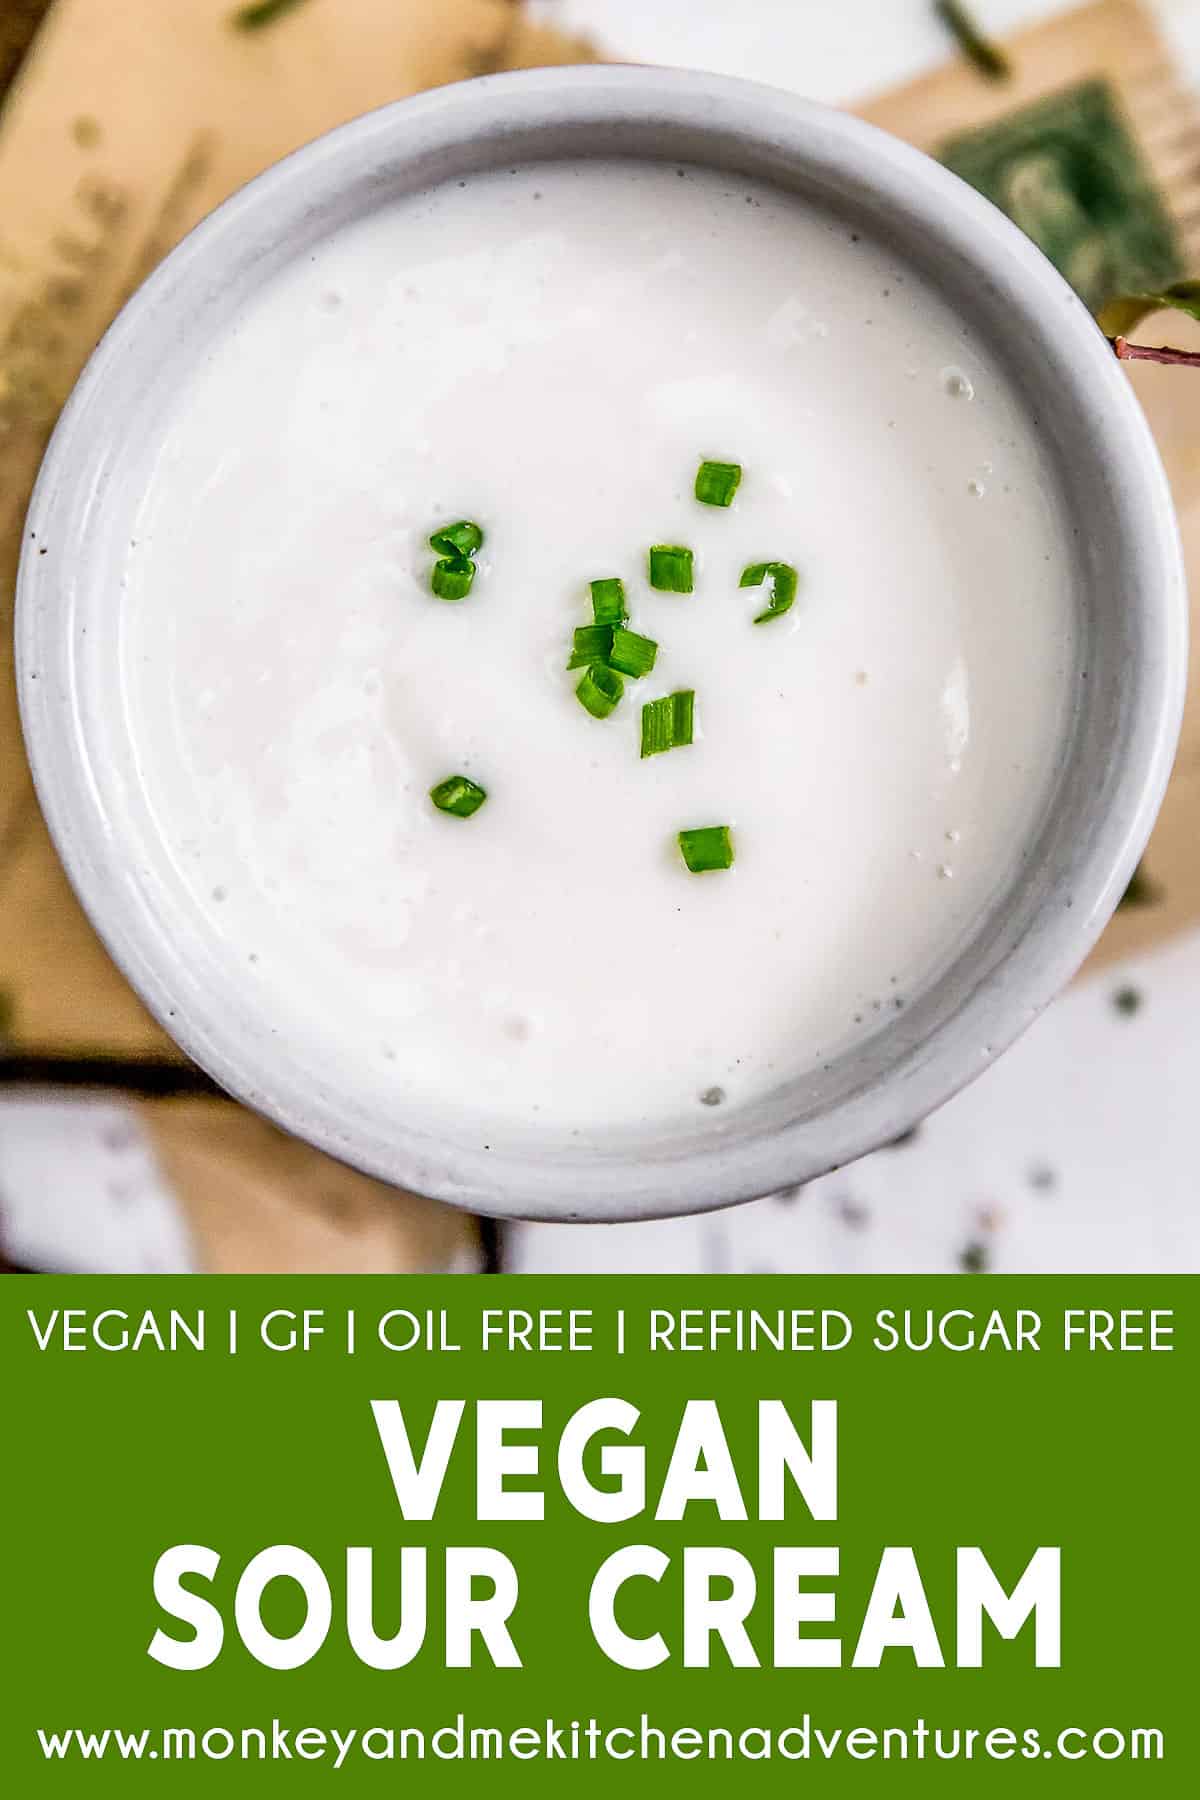 Vegan Sour Cream with text description